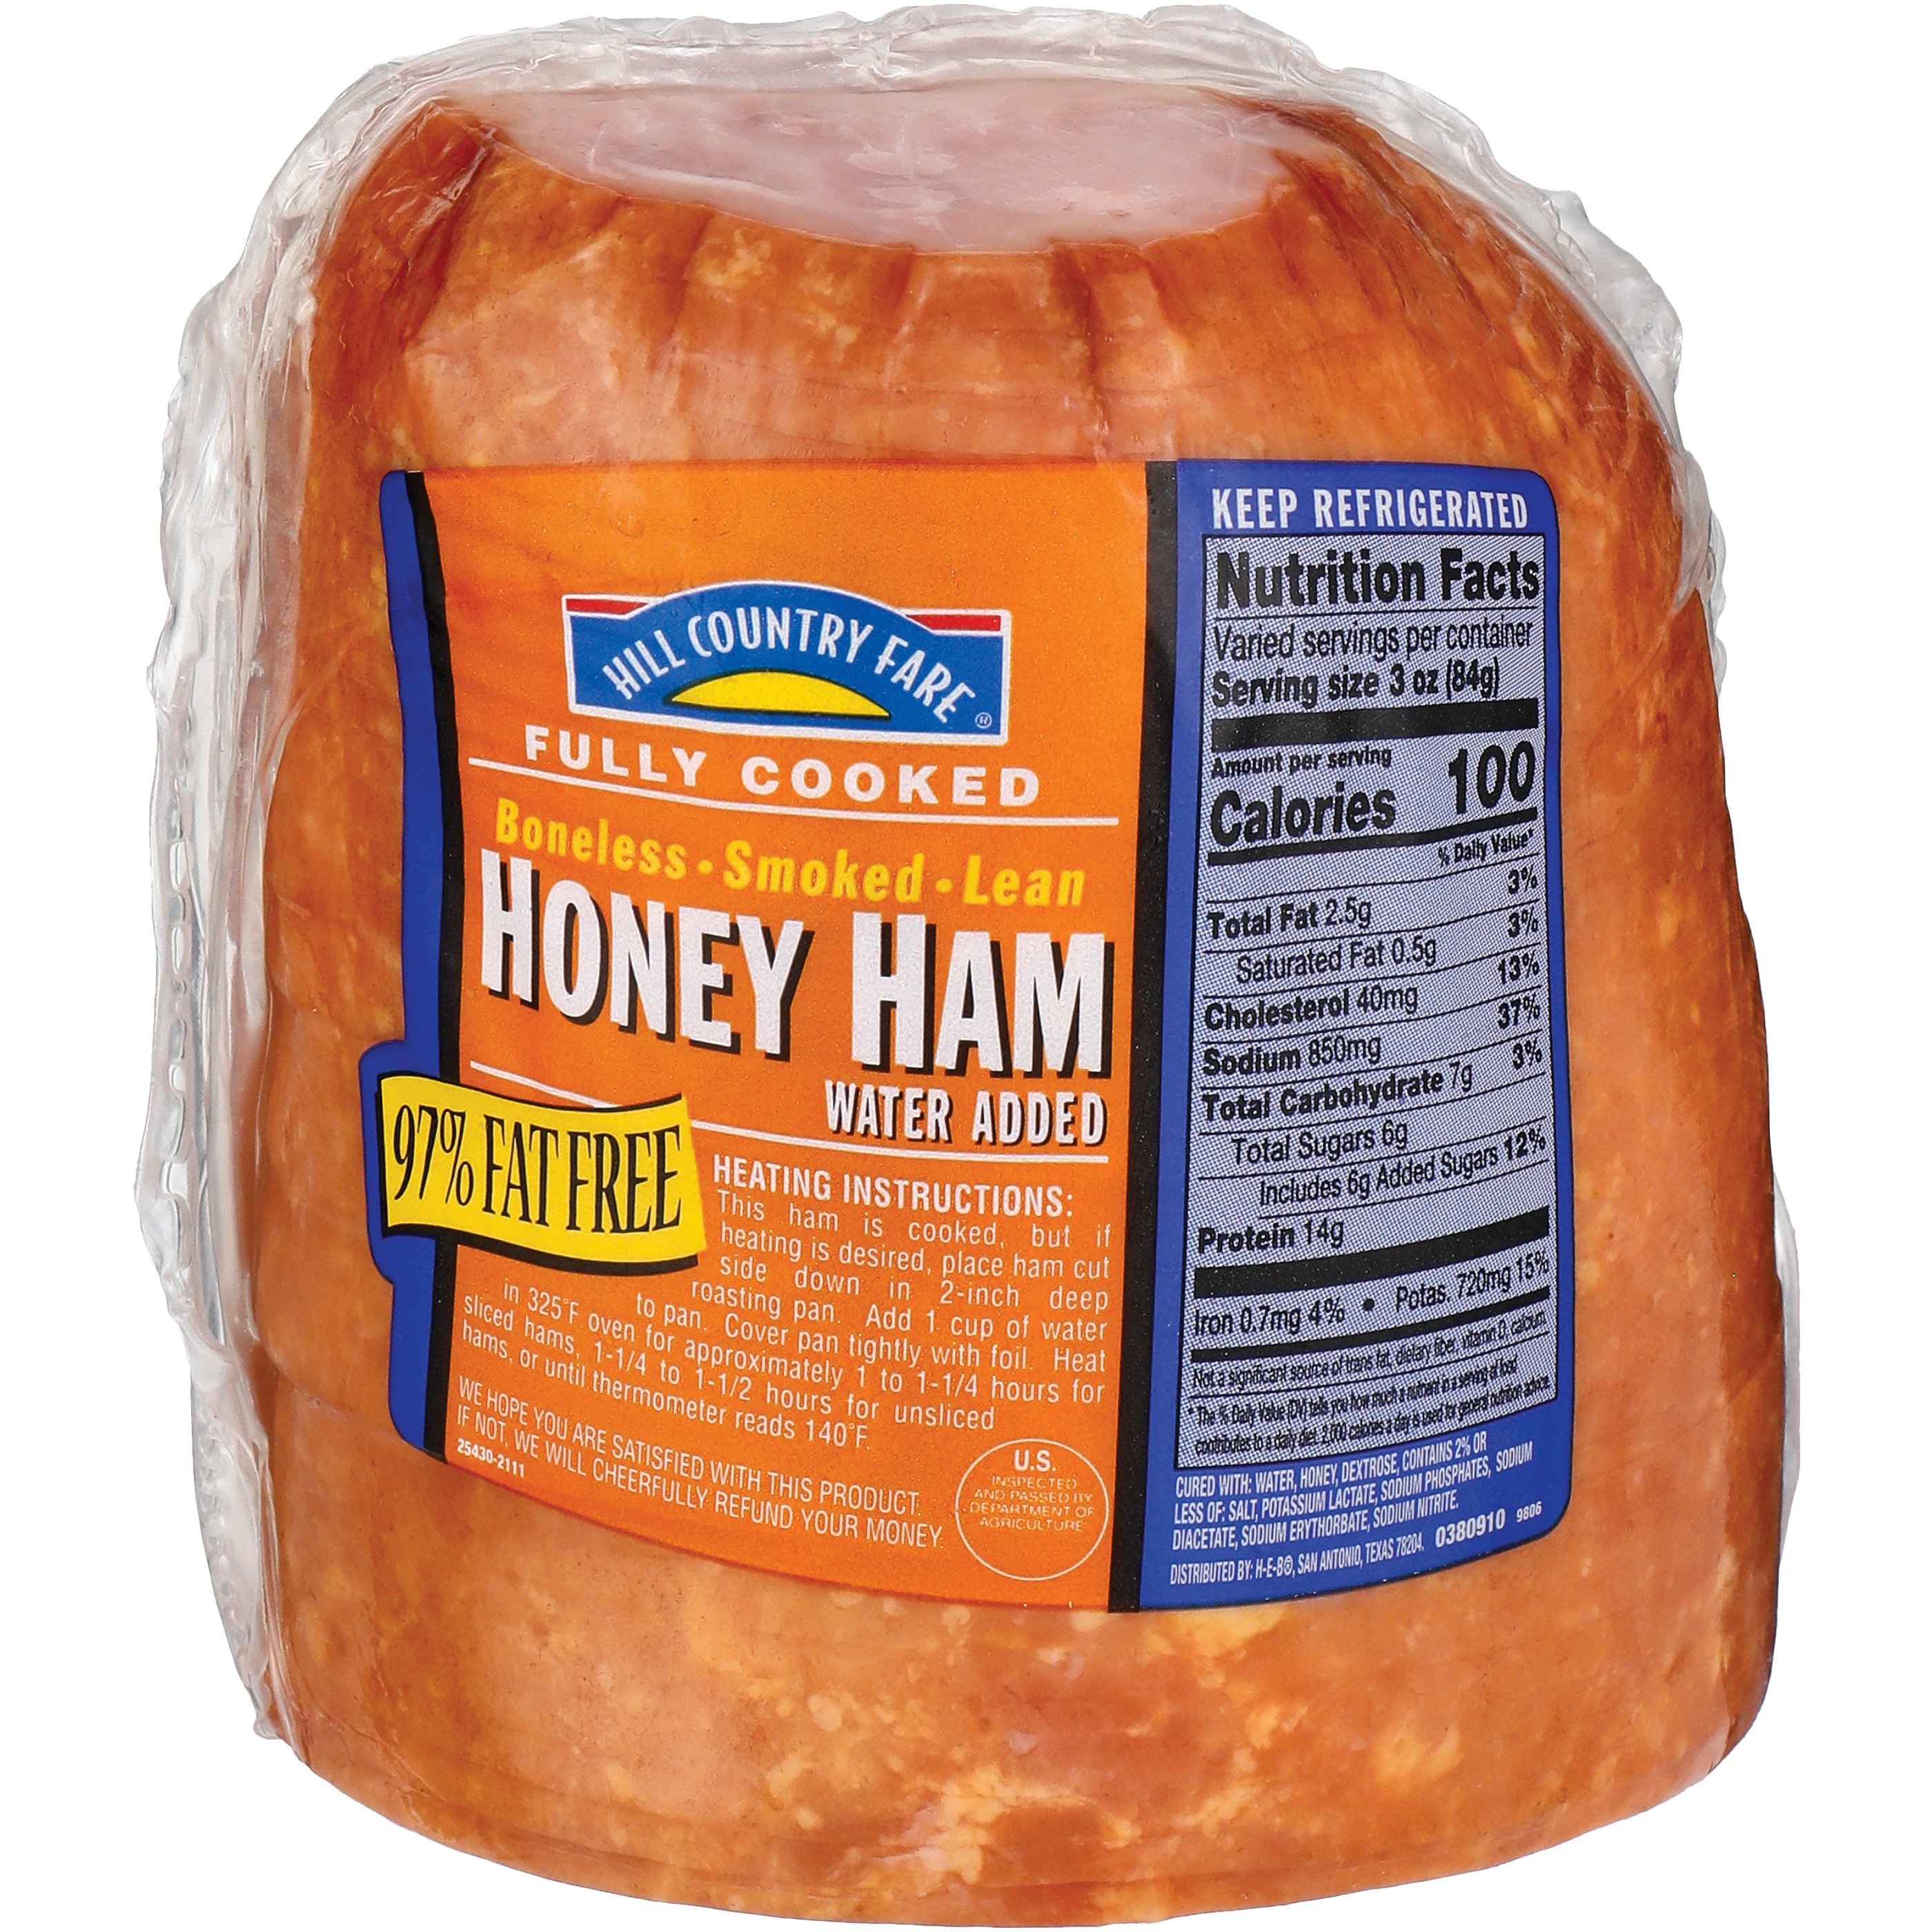 honey ham calories